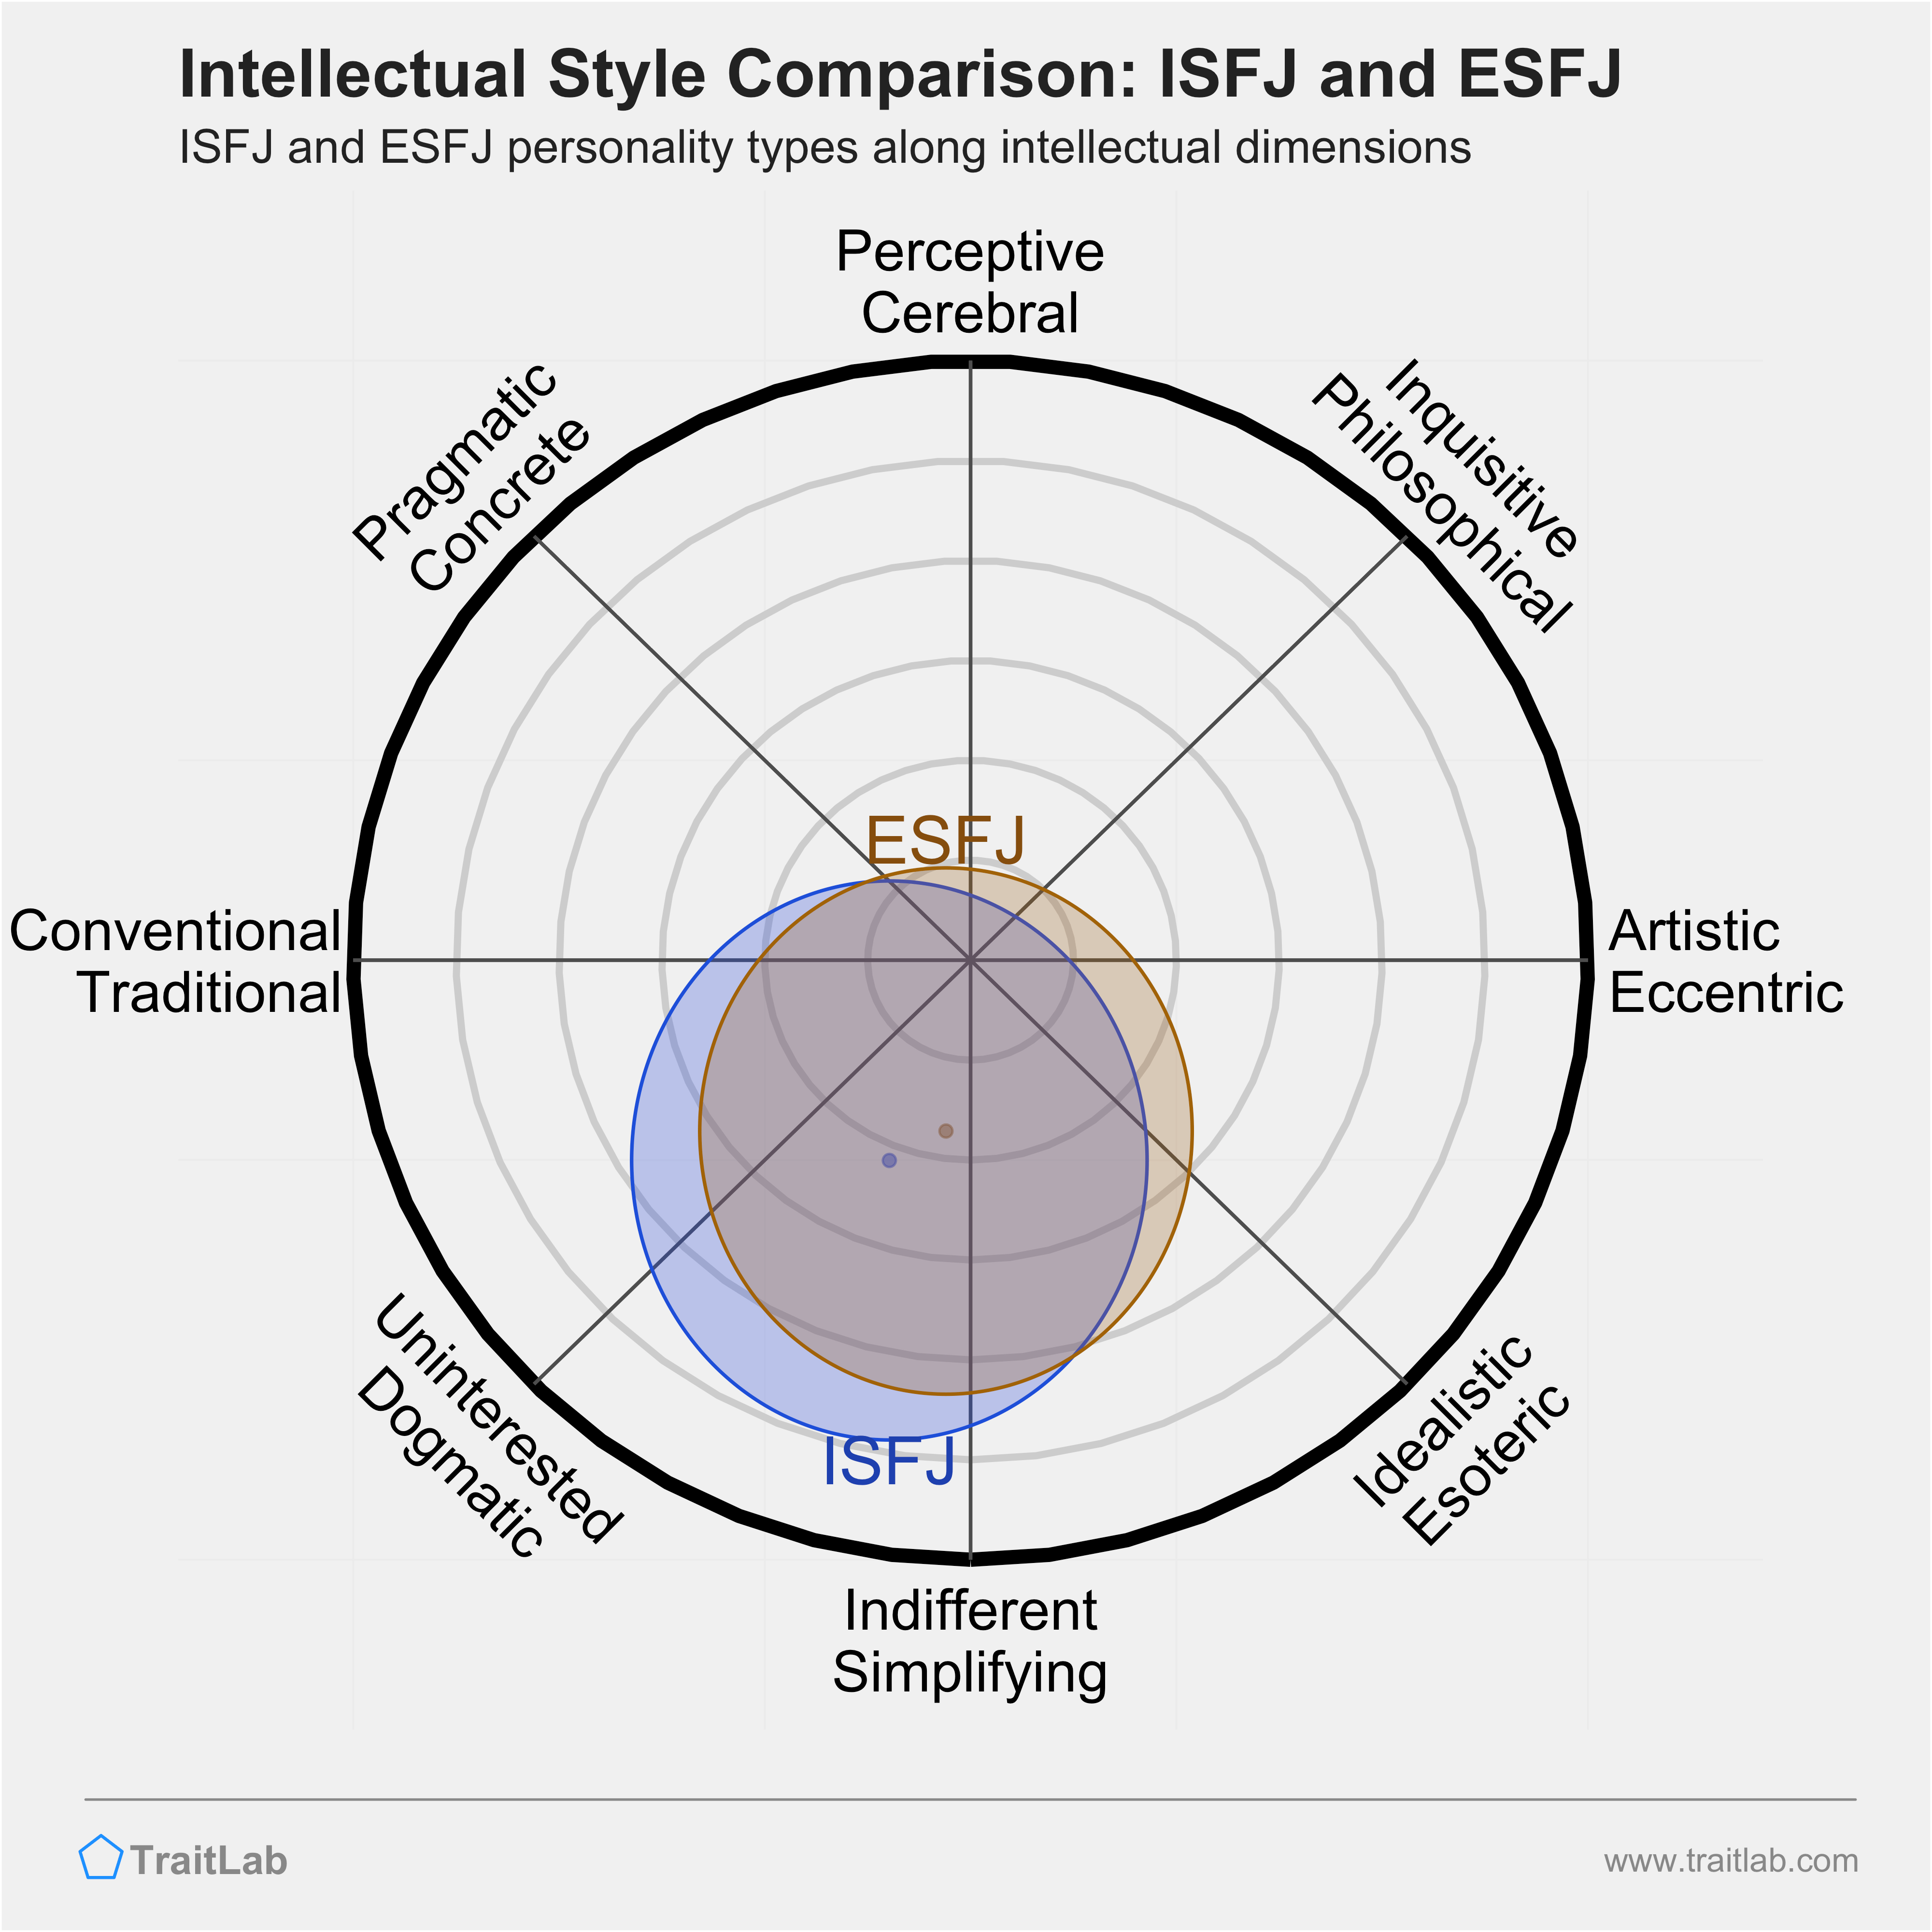 ISFJ and ESFJ comparison across intellectual dimensions